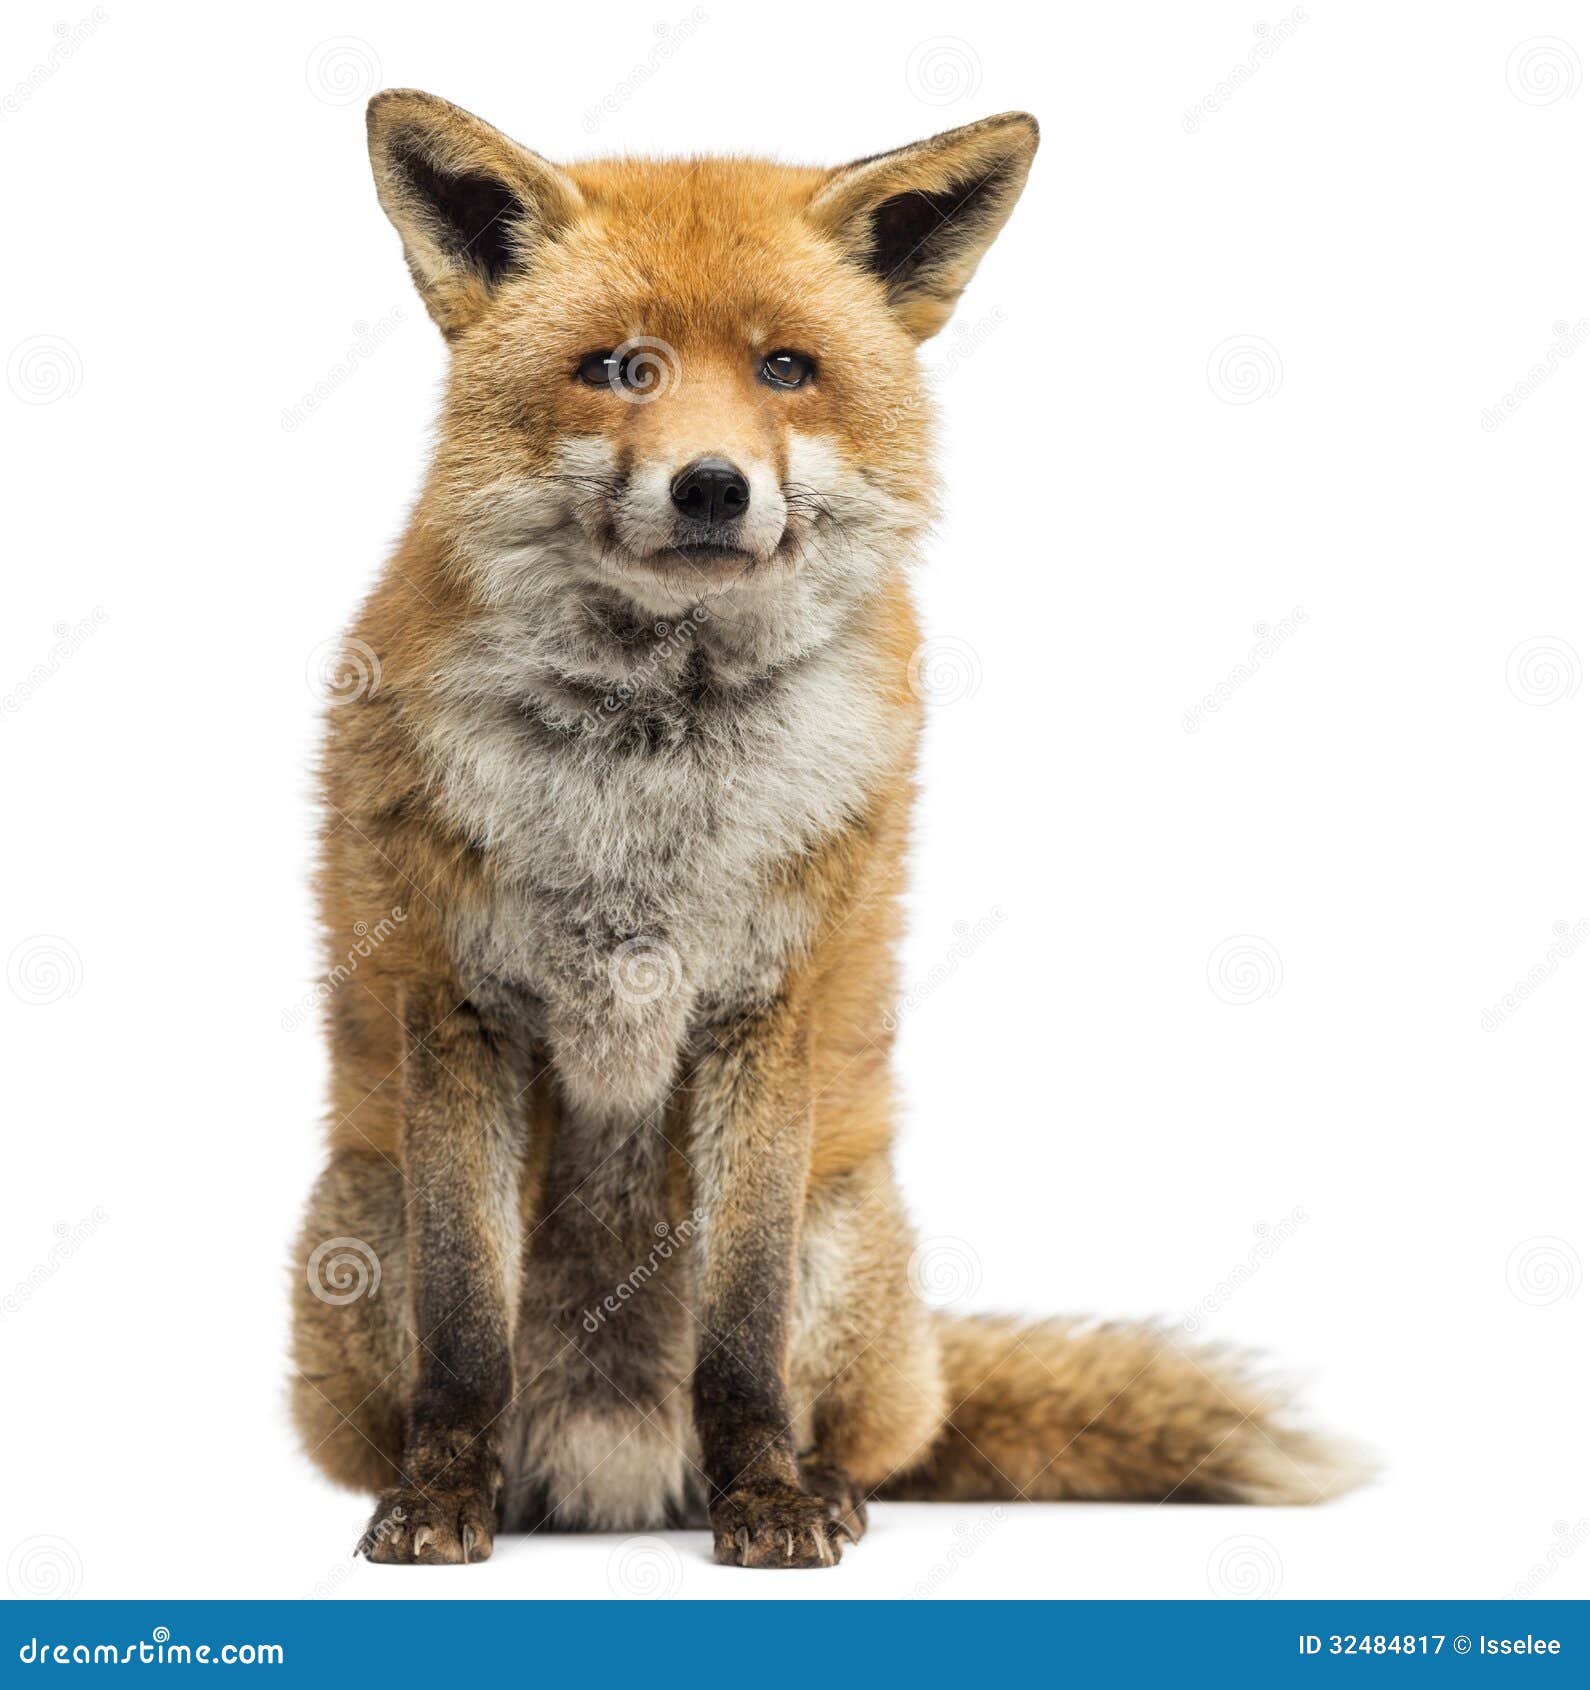 red fox, vulpes vulpes, sitting